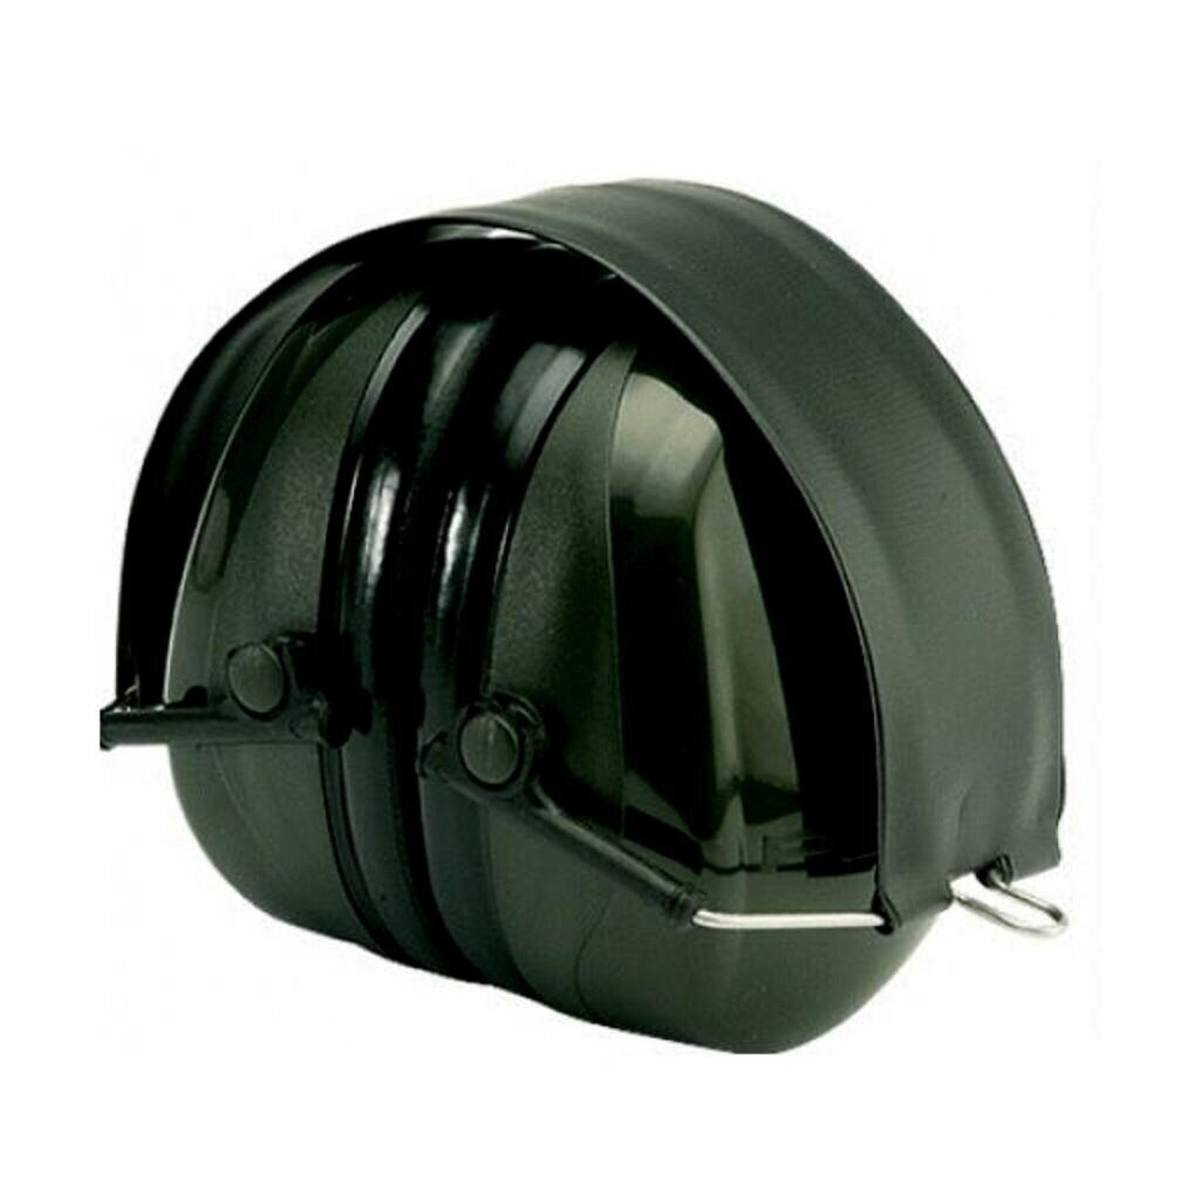 3M PELTOR Optime II oorkappen, inklapbare hoofdband, groen, SNR=31 dB, H520F